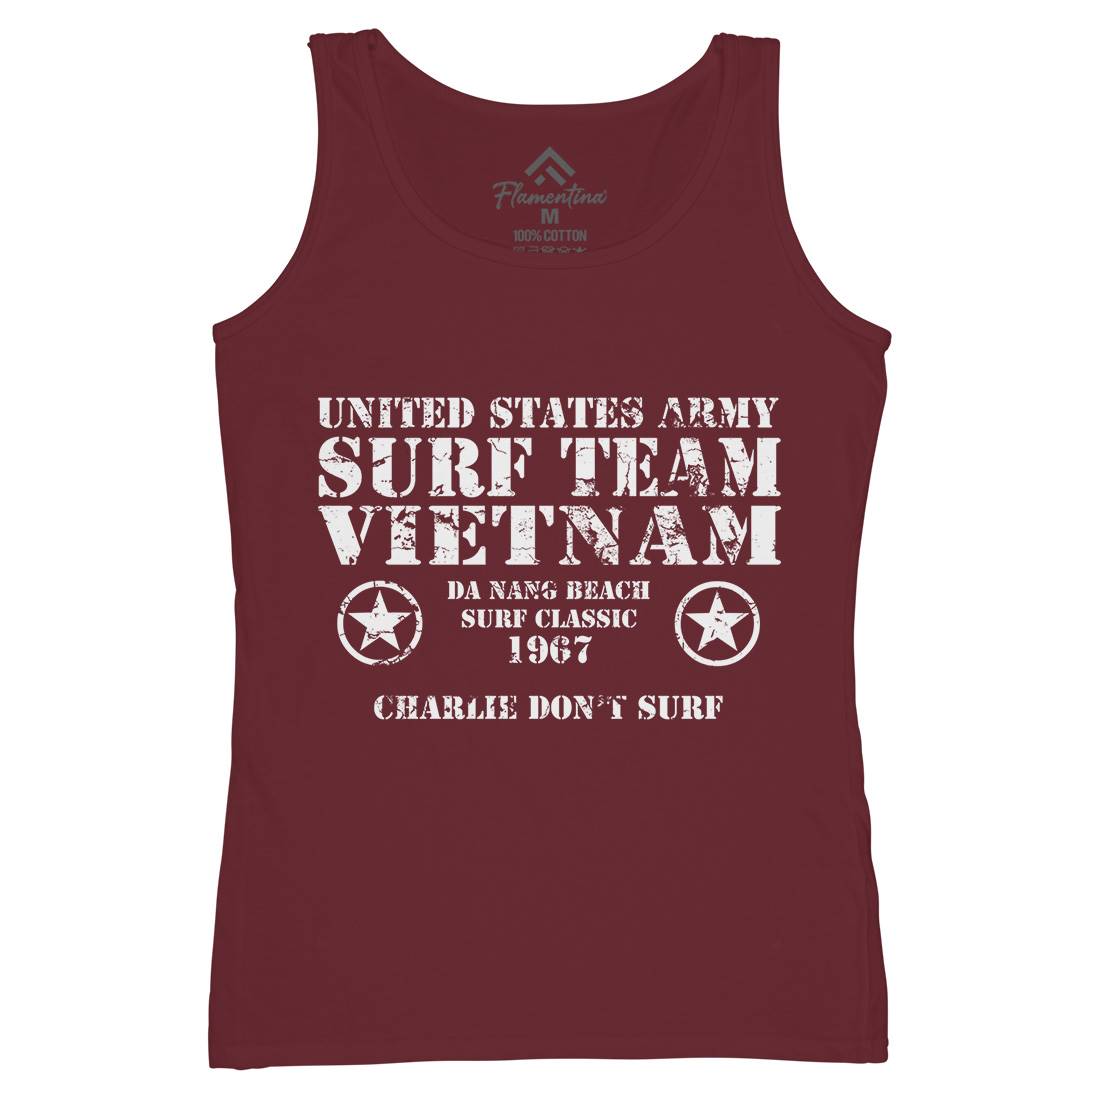 Surf Team Vietnam Womens Organic Tank Top Vest Army D438